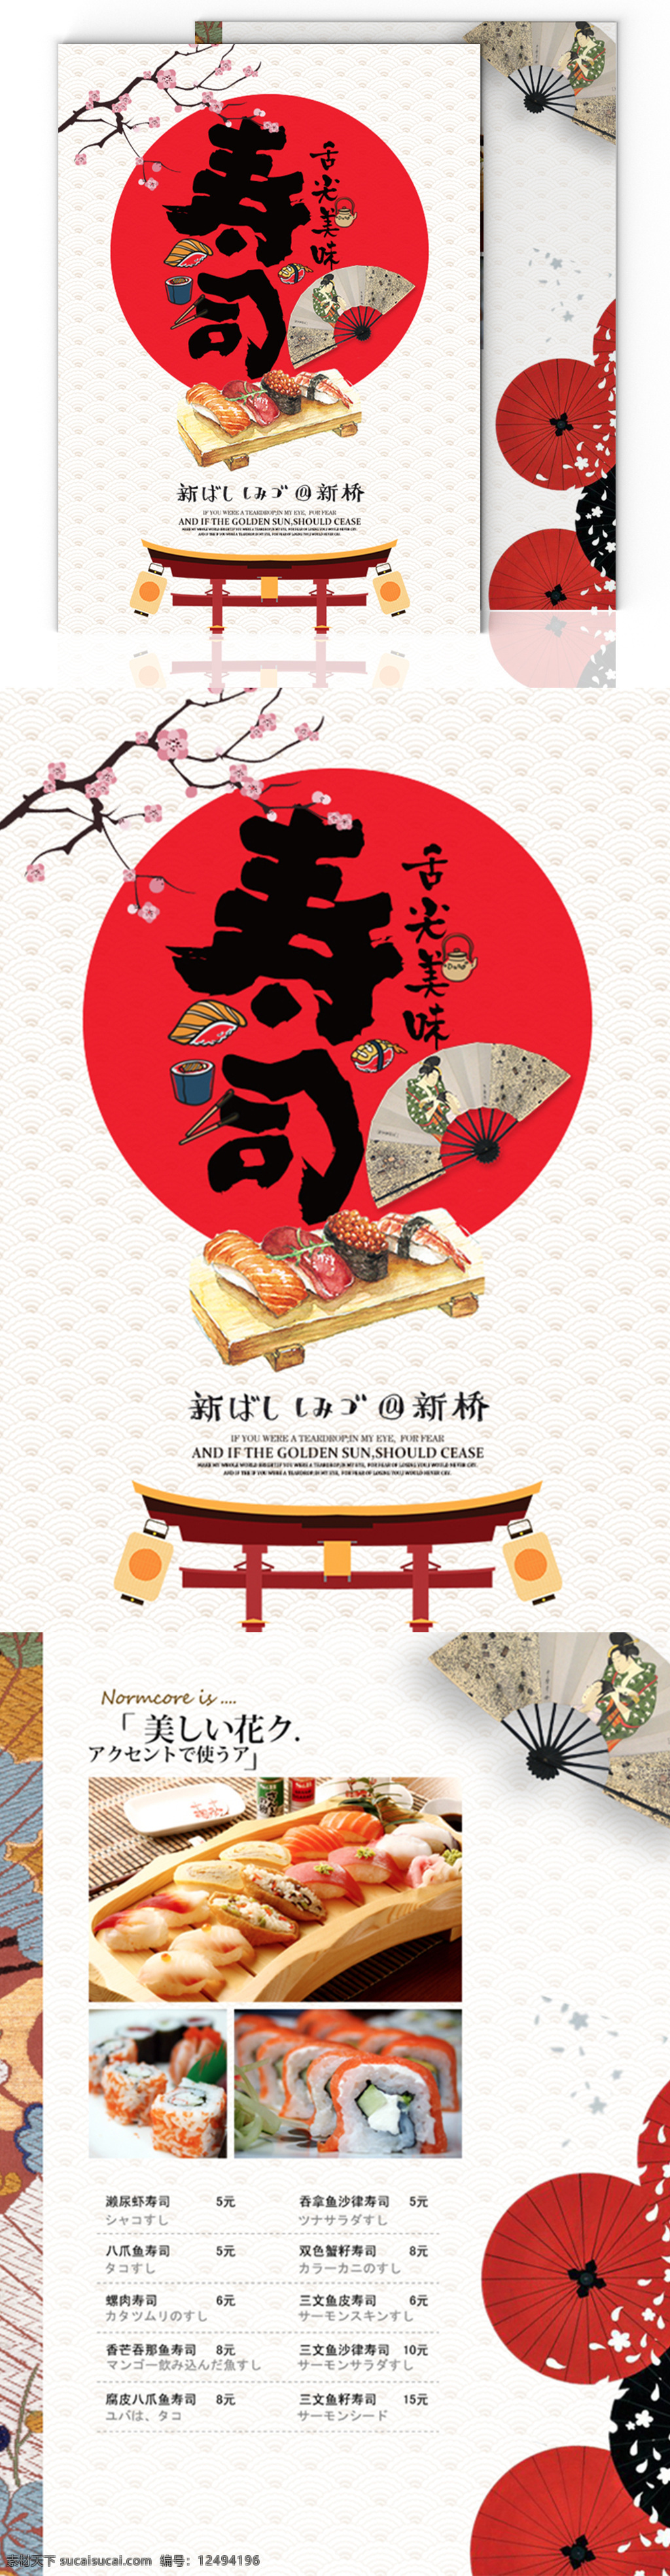 日式 风格 寿司 简约 美食菜谱 菜单 日本 和风 美食 简洁 菜谱